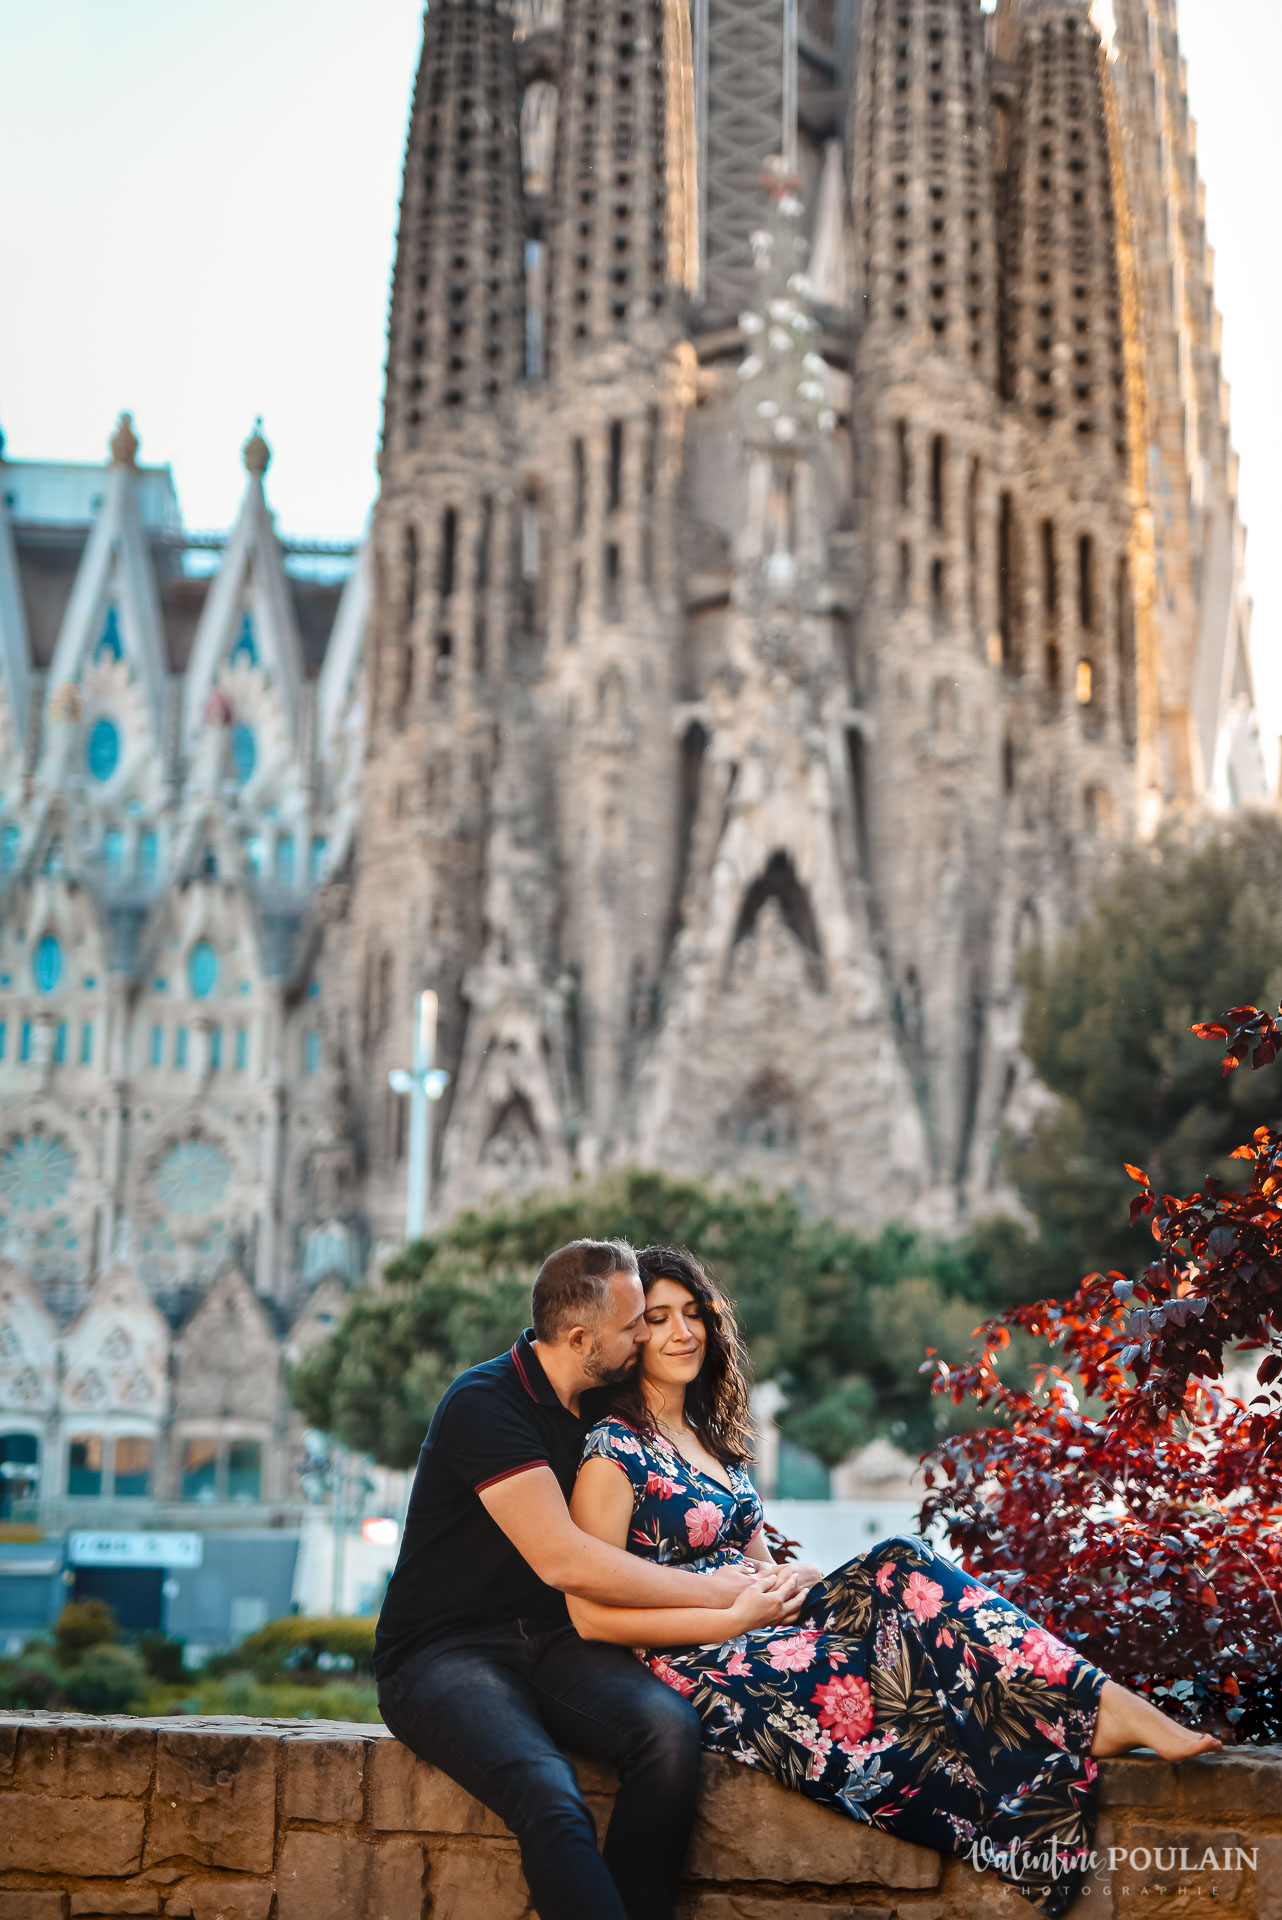 Séance photo couple Barcelone - Valentine Poulain Sagrada